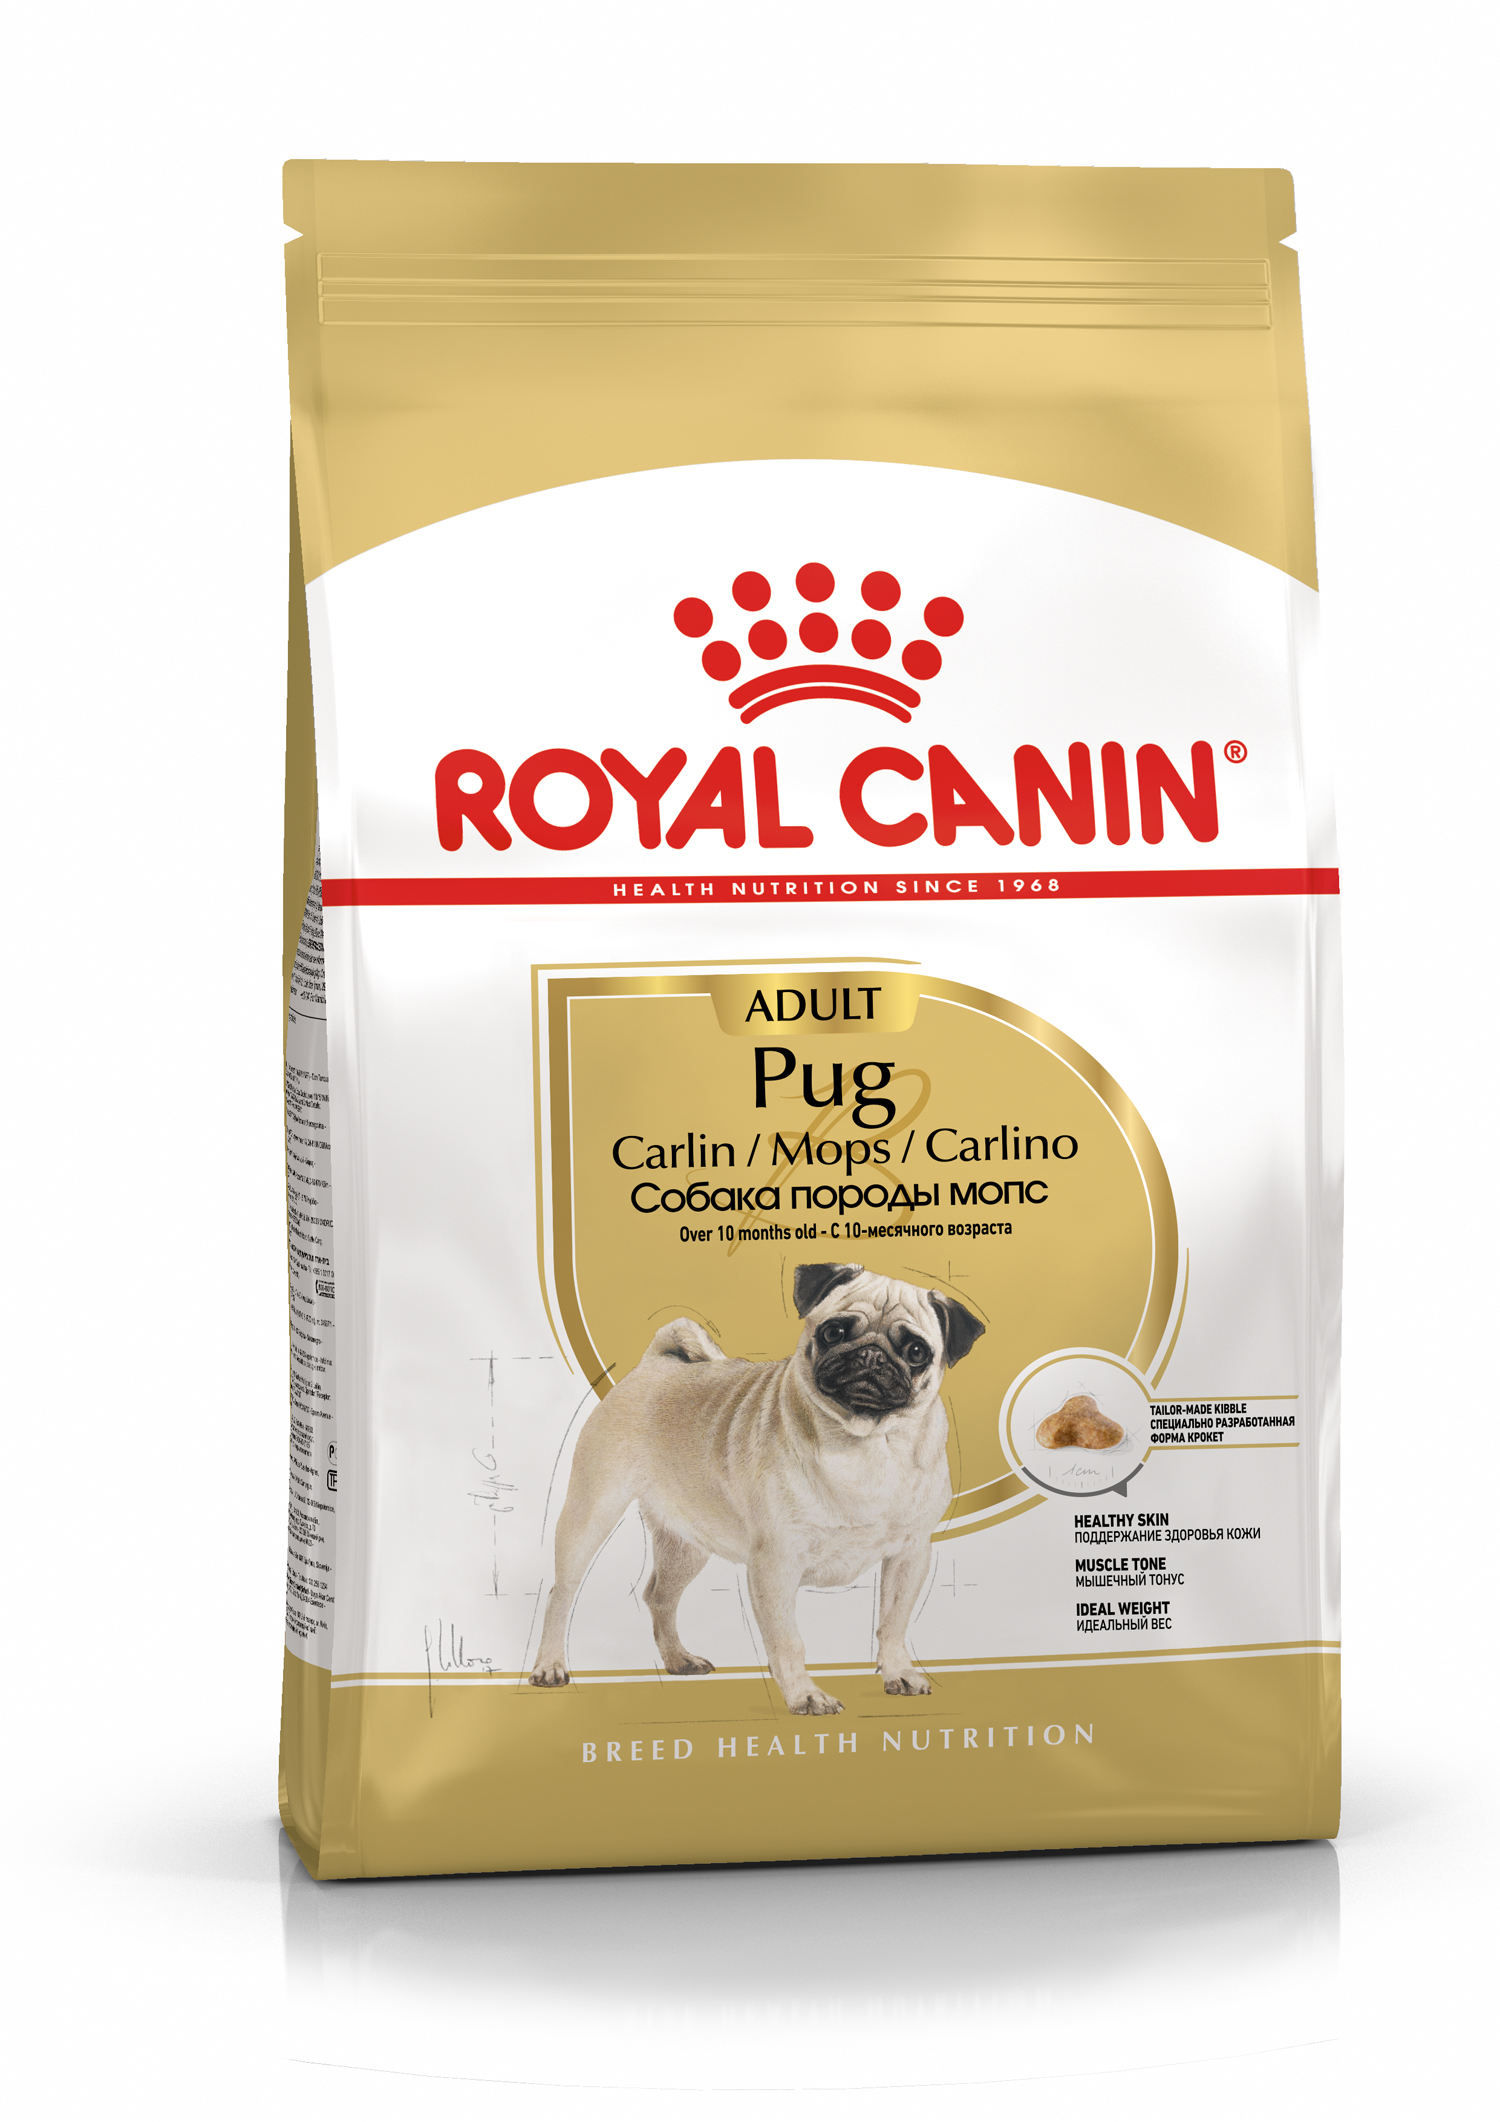 Сухой корм для собак Royal Canin Pug Adult, для породы Мопс 7,5 кг